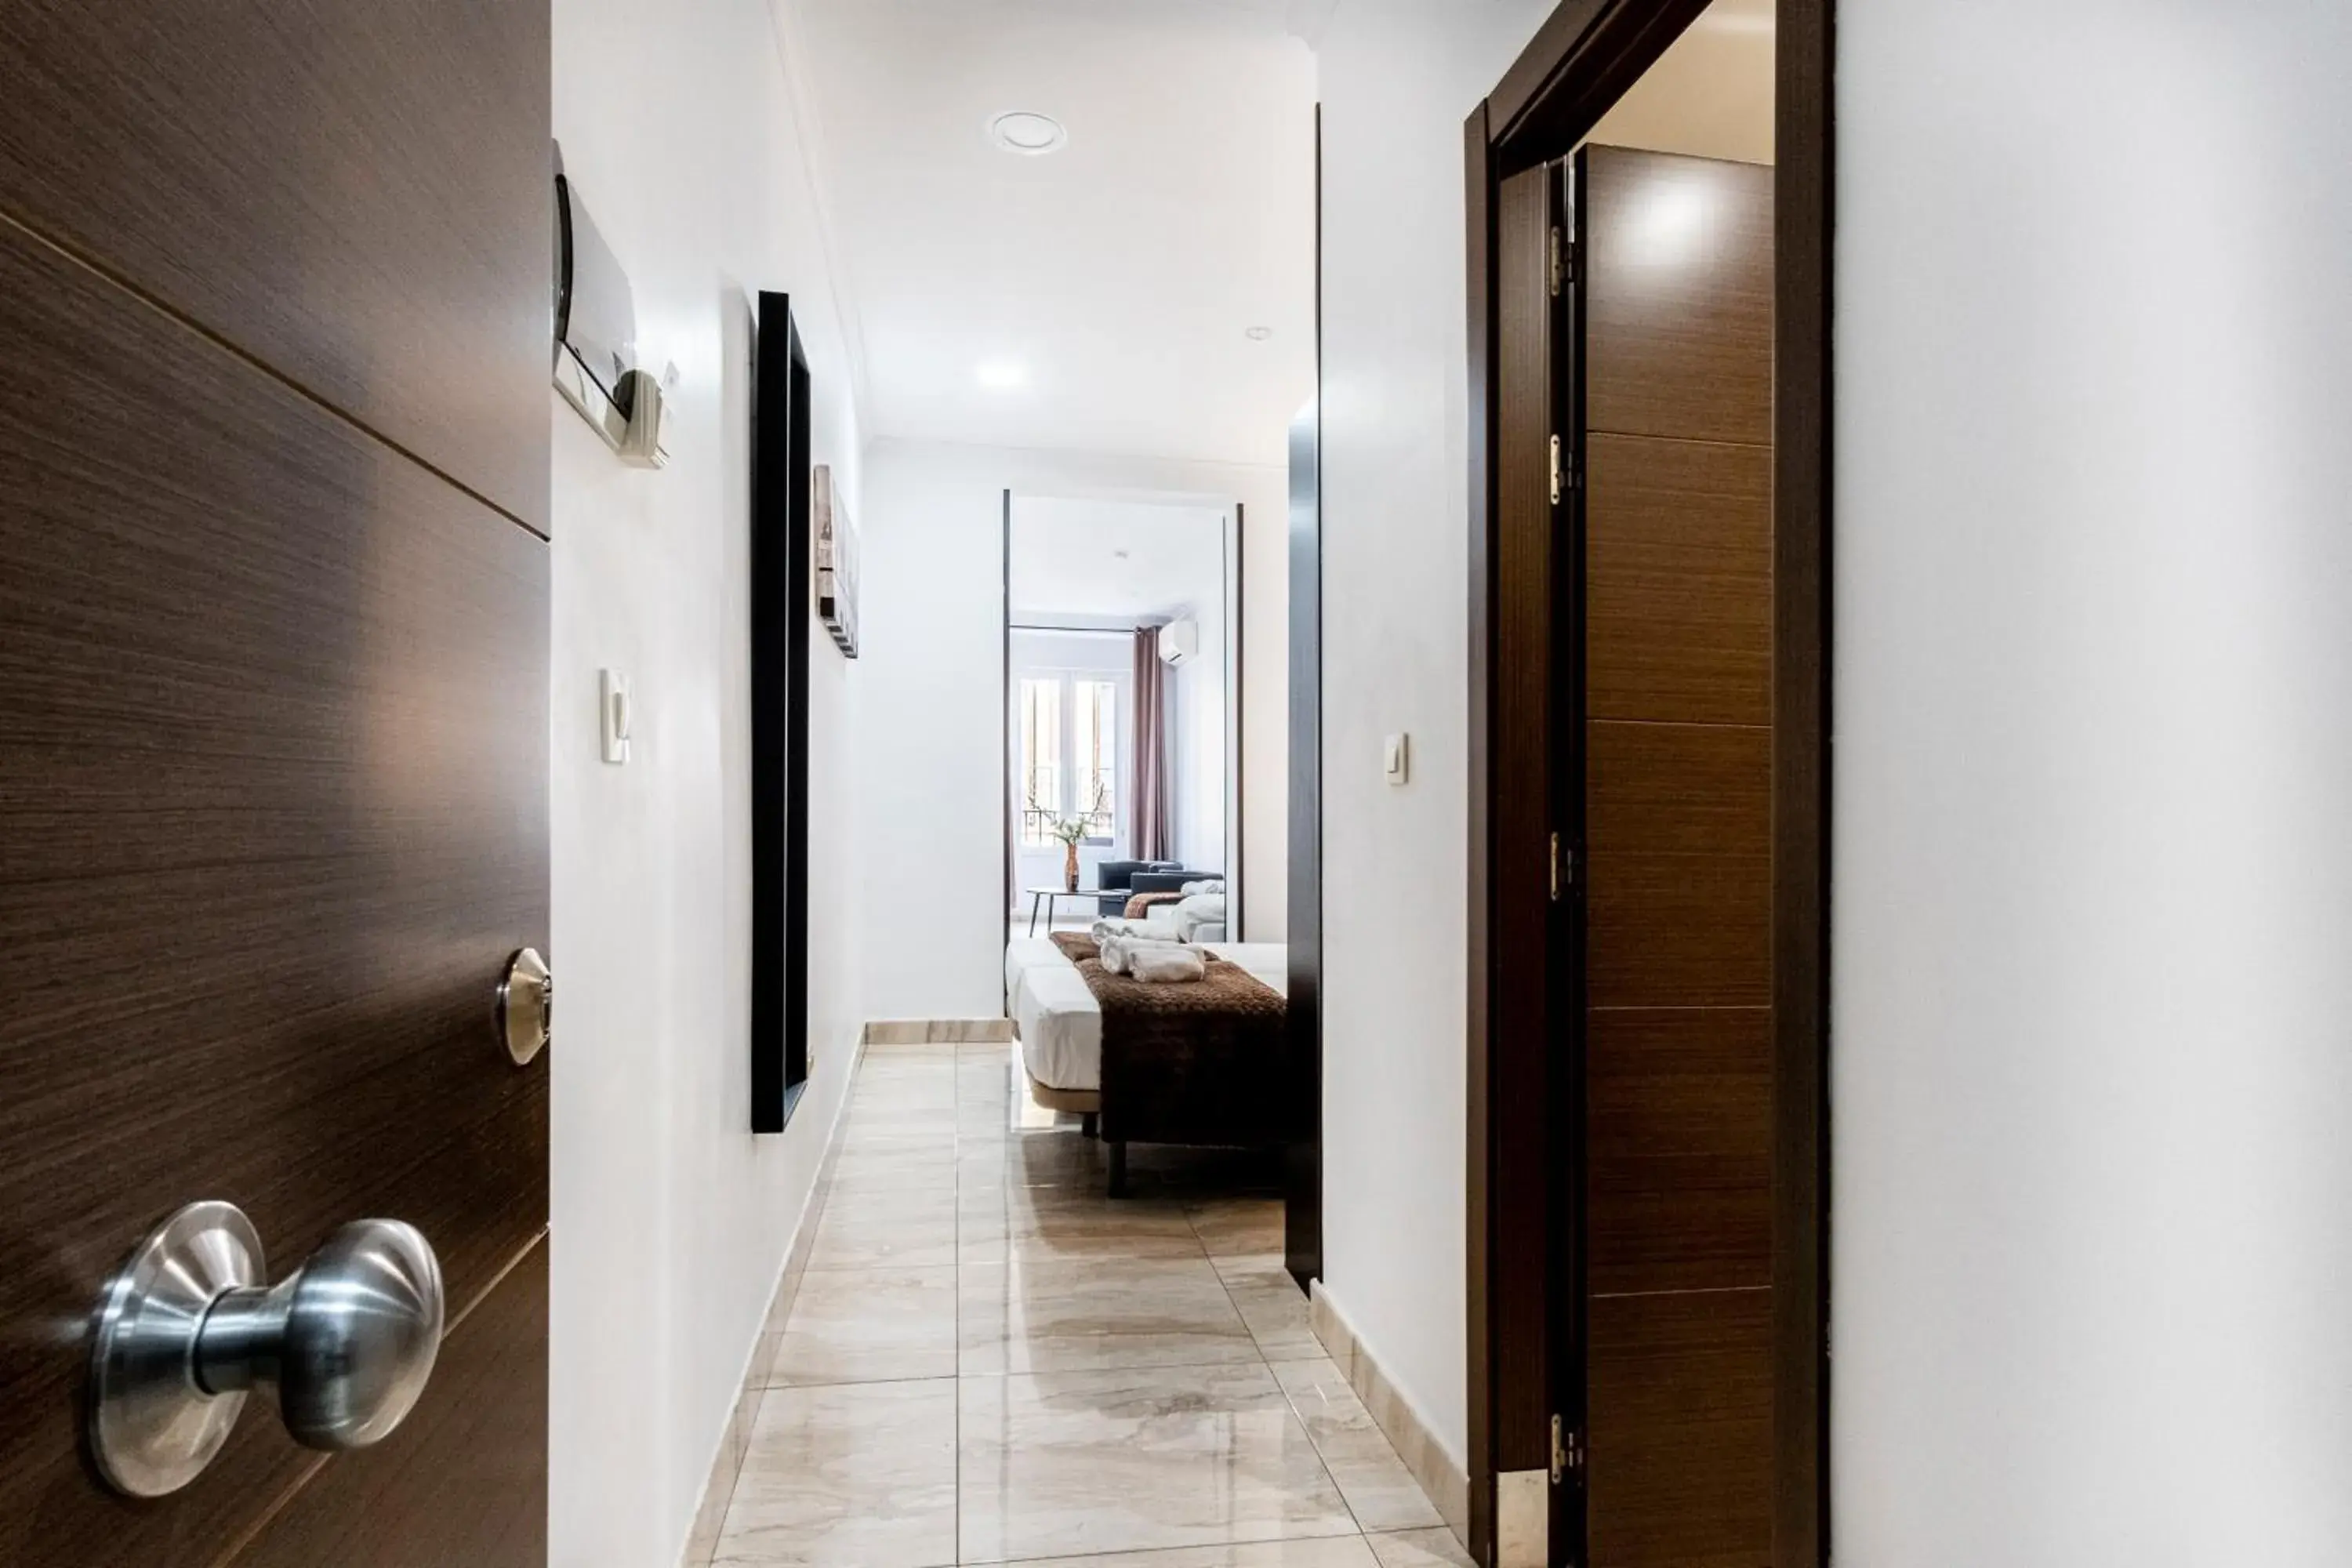 Photo of the whole room, Bathroom in Hostal Rincón de Sol